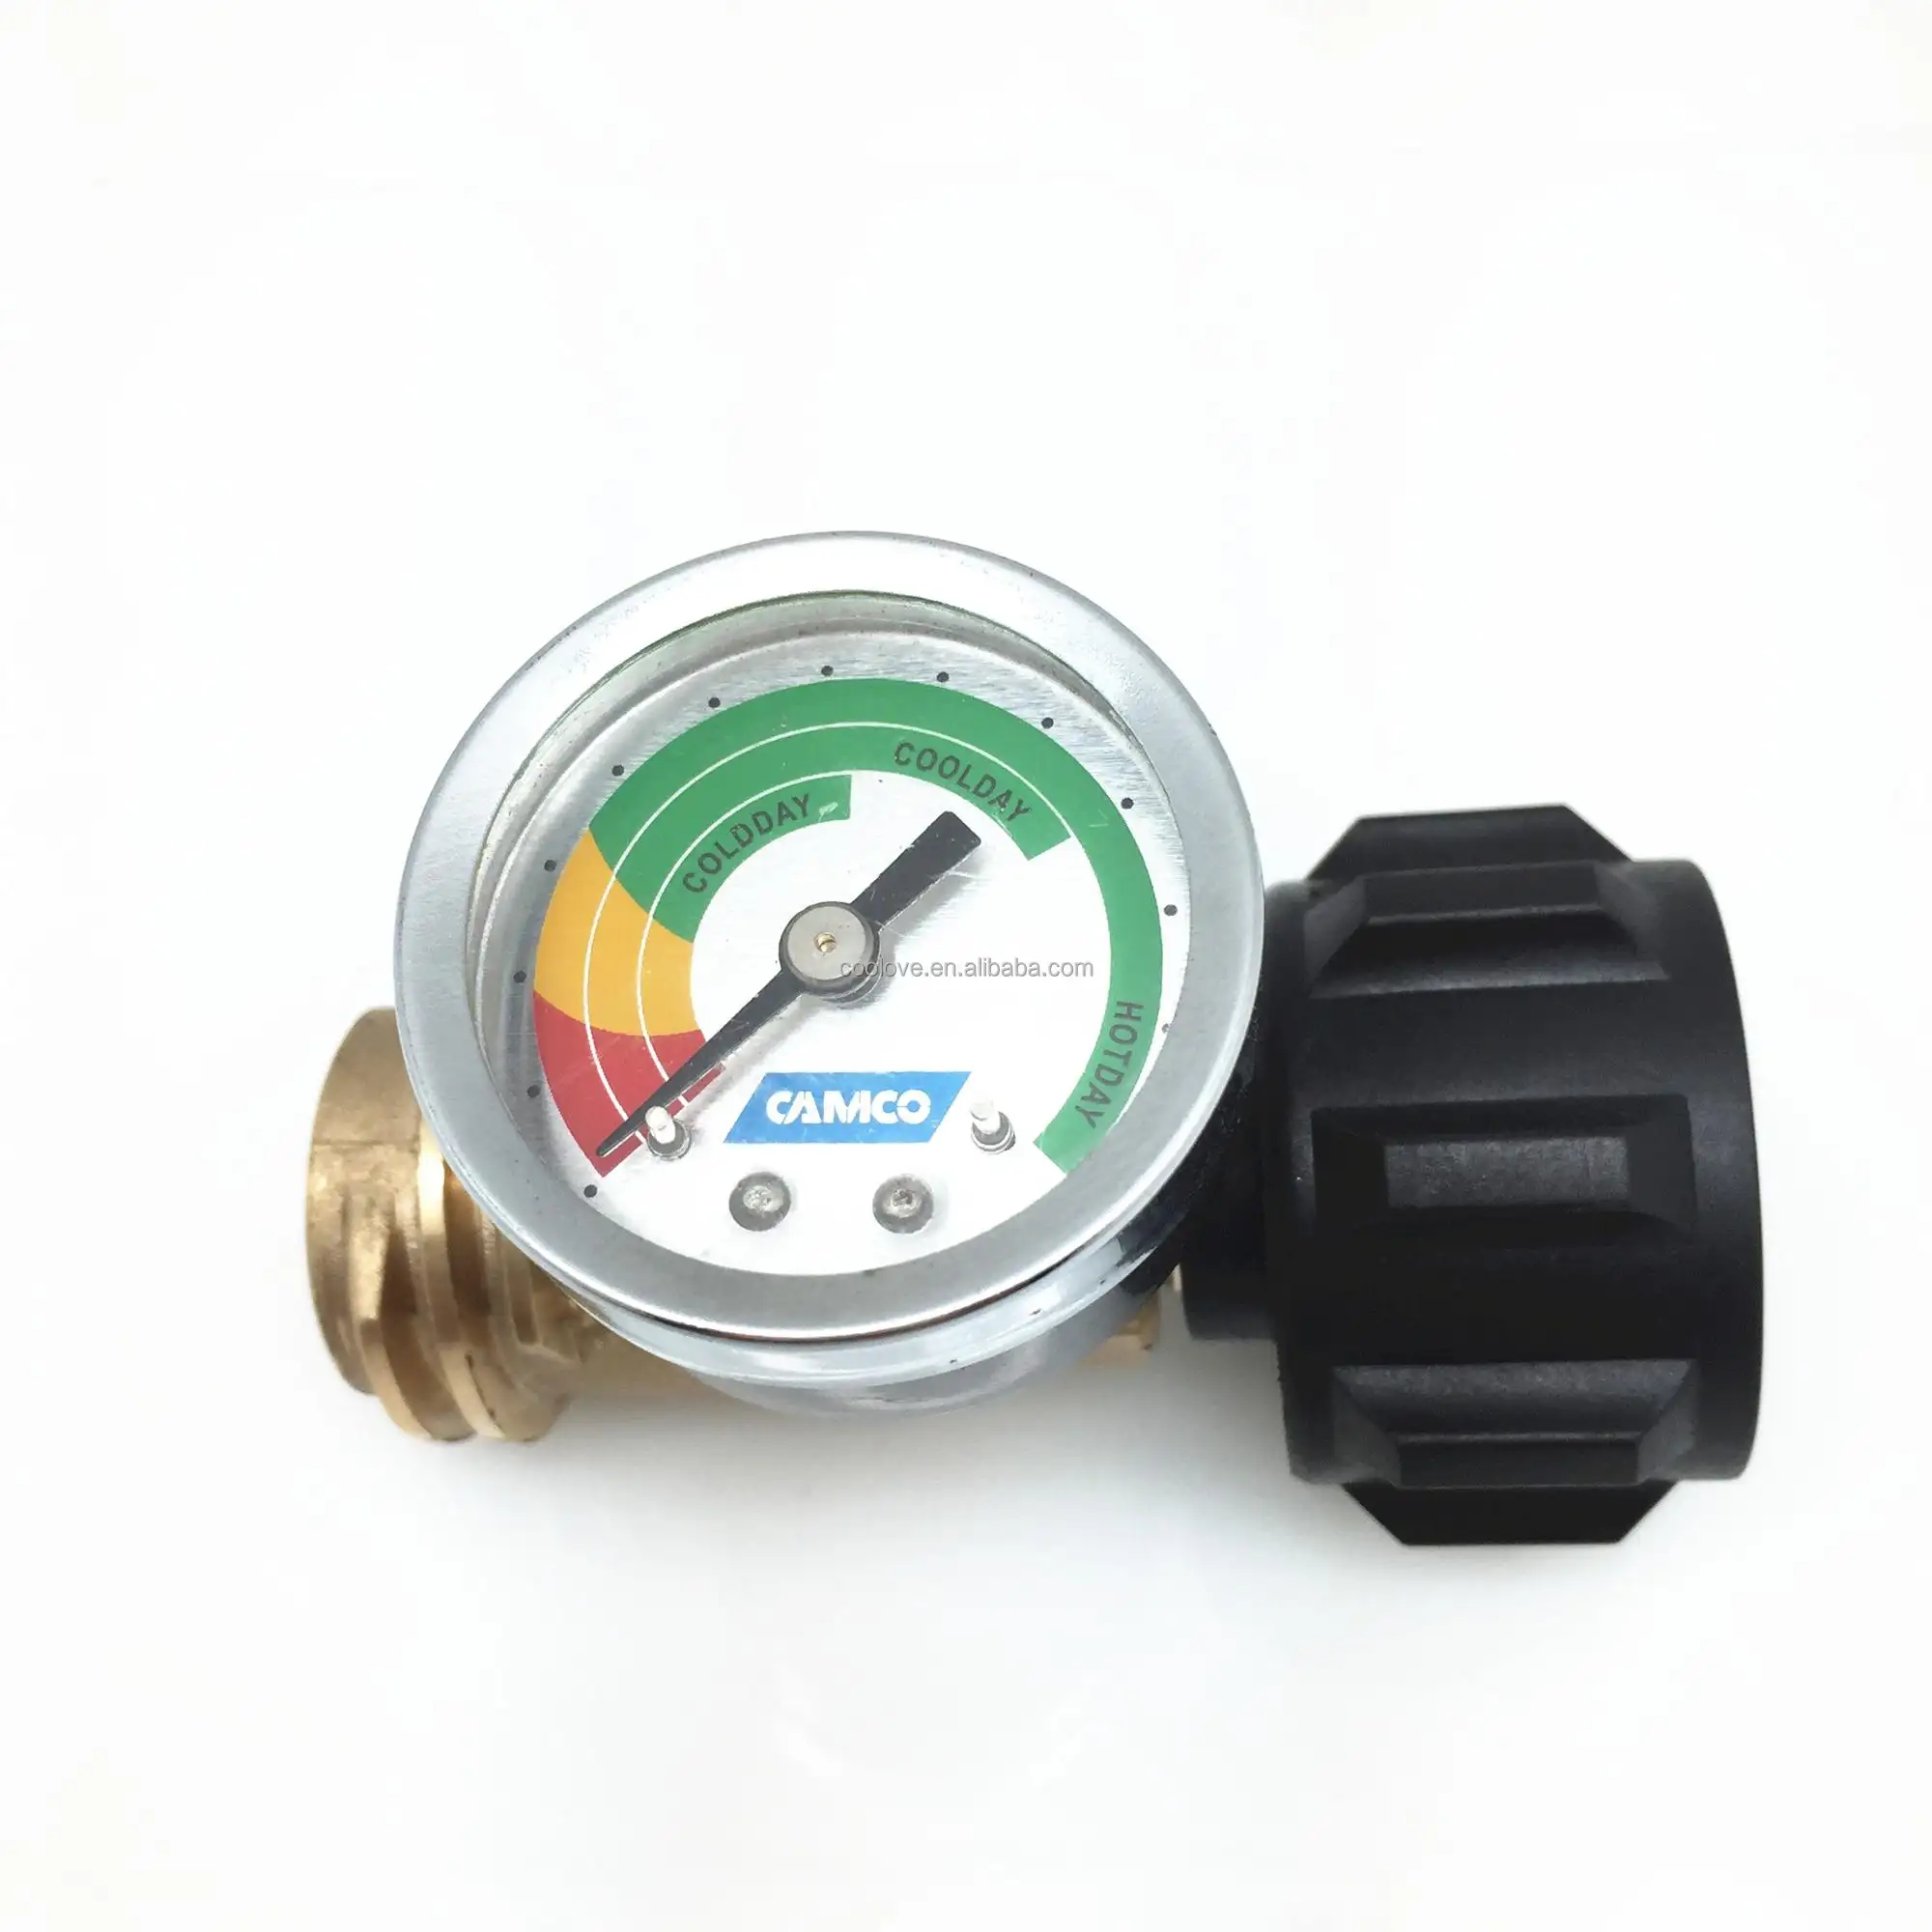 Propane Tank Gauge Level Indicator Leak Detector Gas Pressure Meter